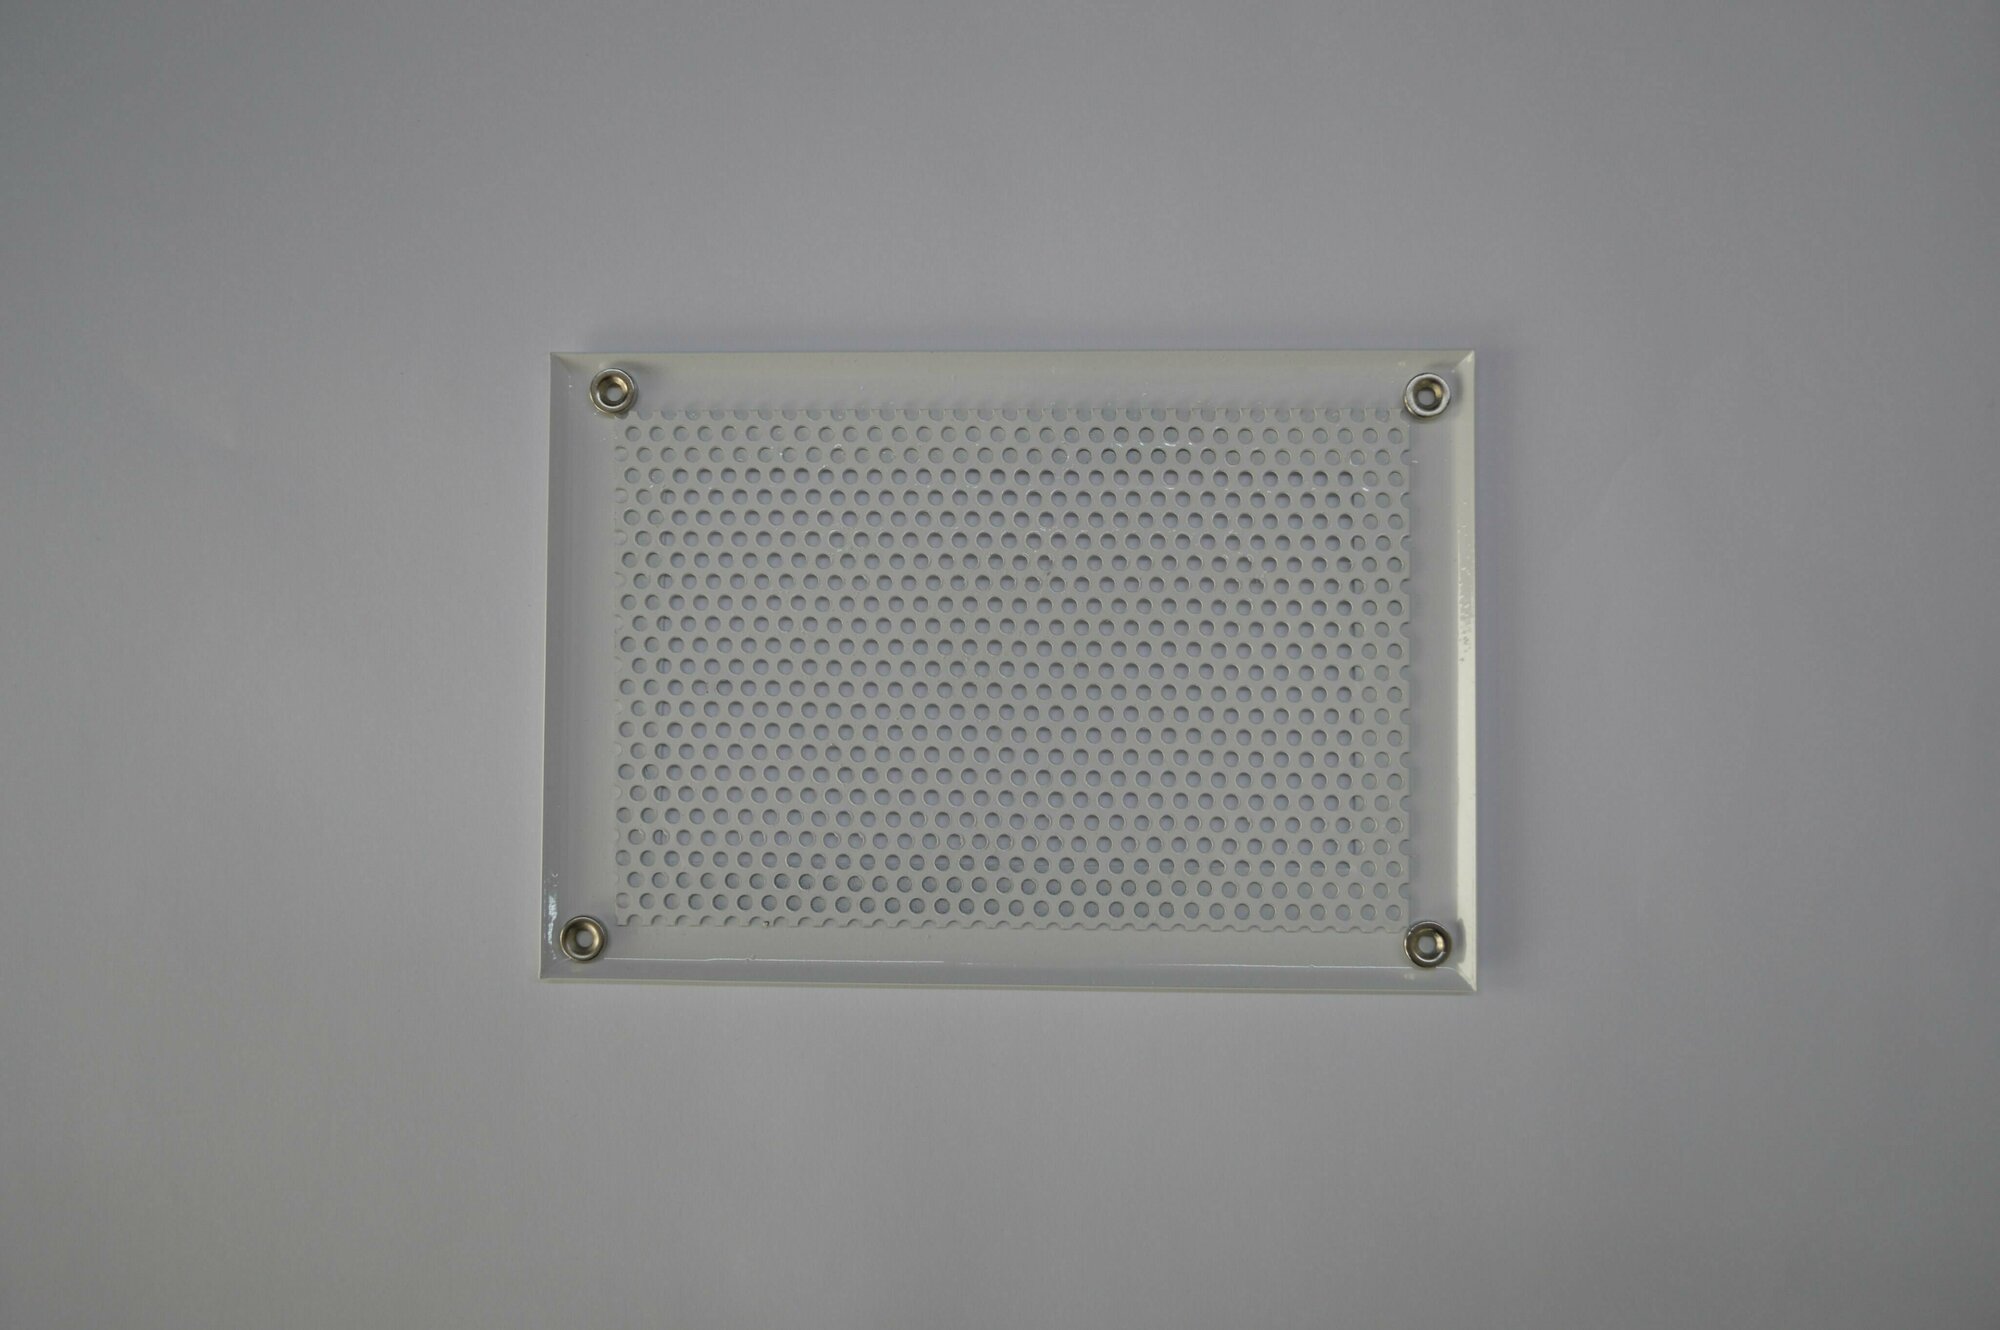 Вентиляционная решетка металлическая на магнитах 190х140мм, тип перфорации кружок, кремовый